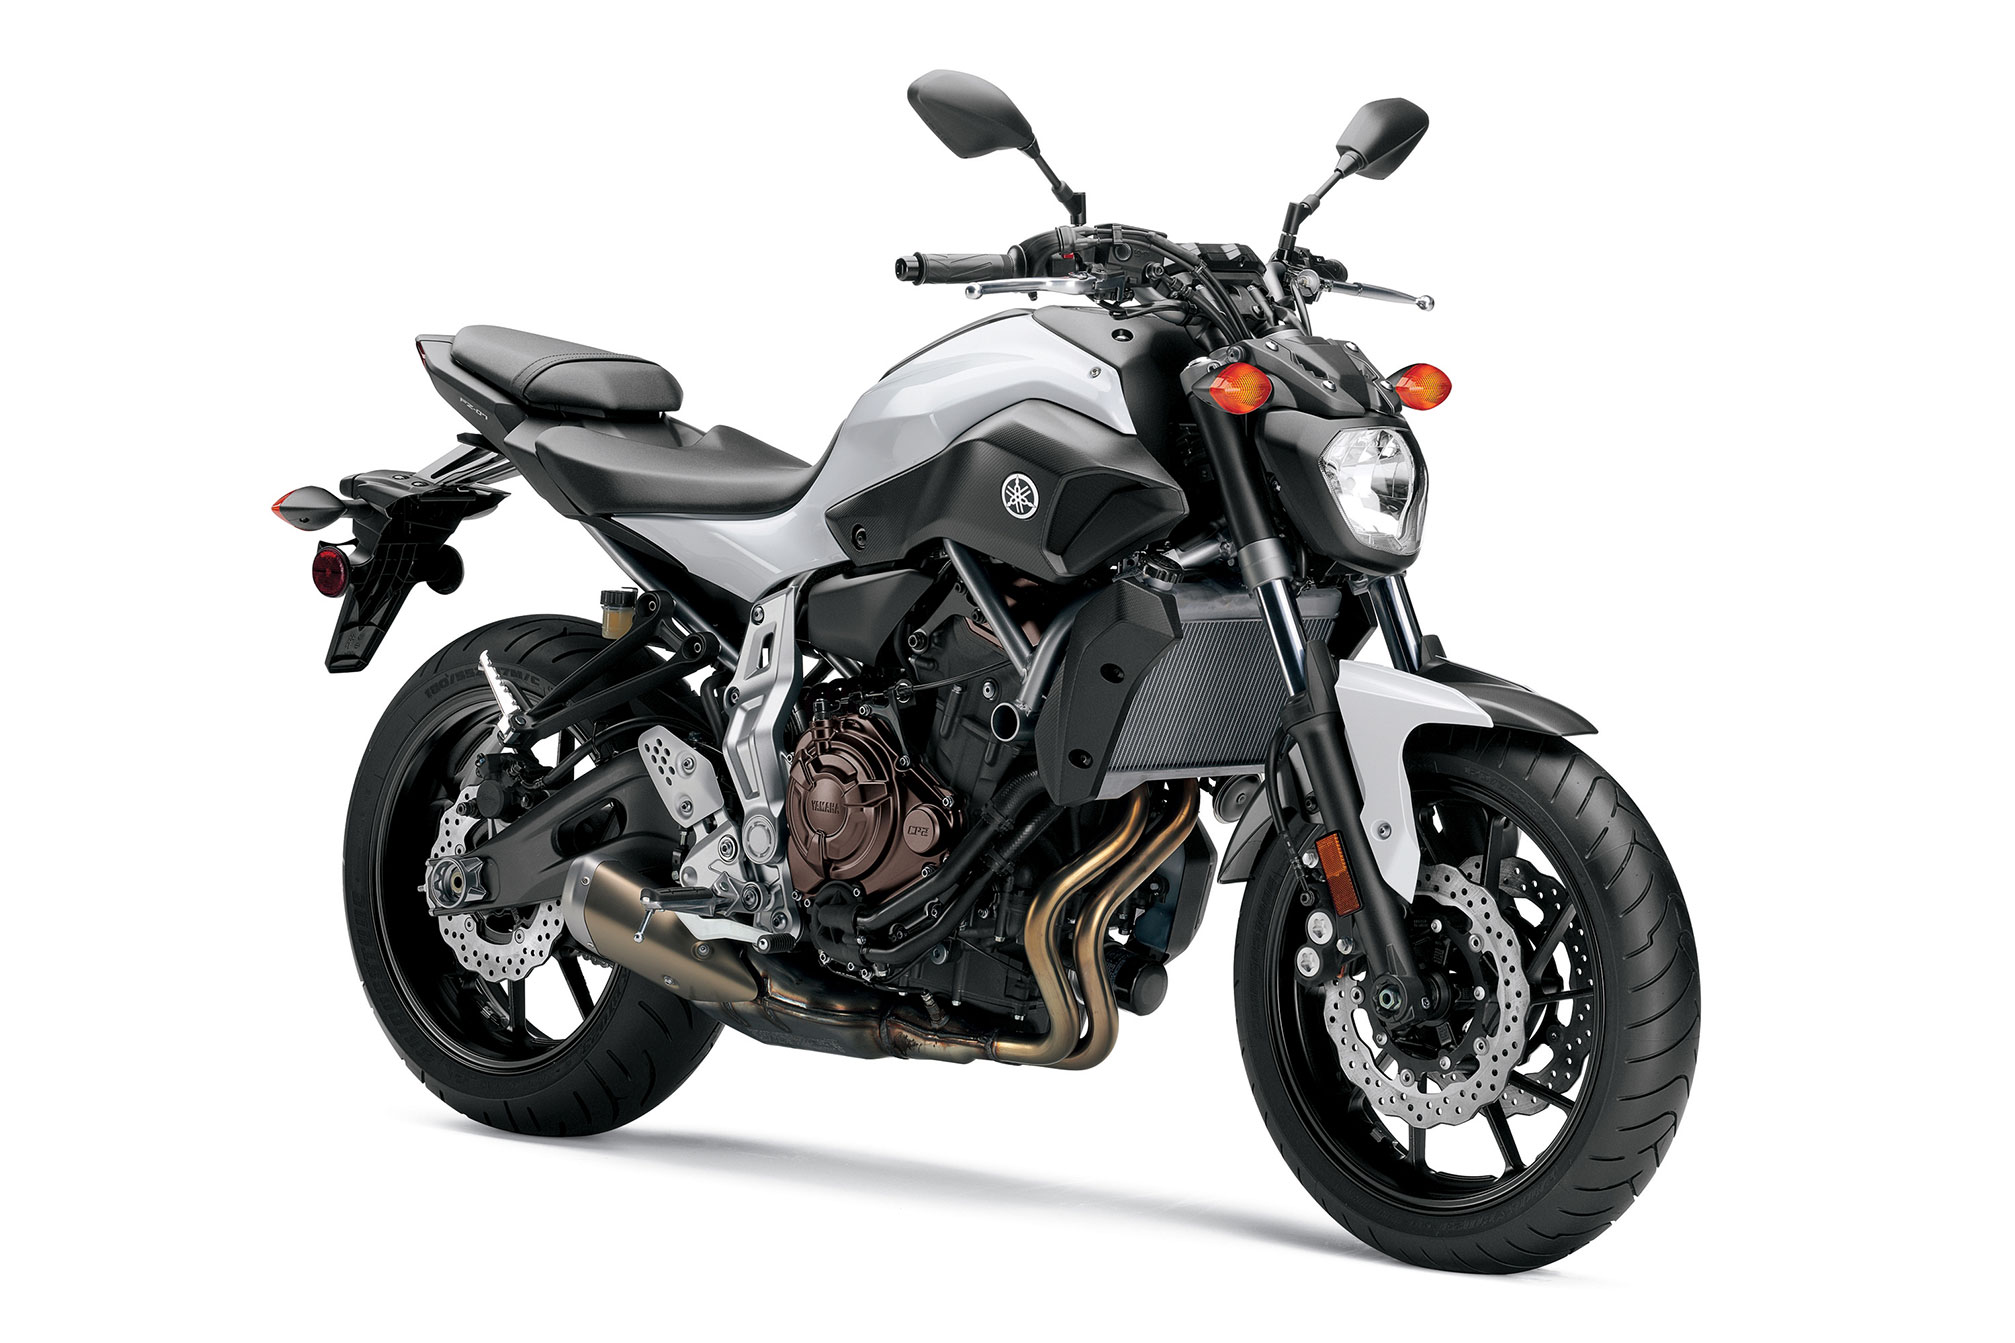 Motorcycle Reviews: 2015 Yamaha FZ-07 Review | autoTRADER.ca